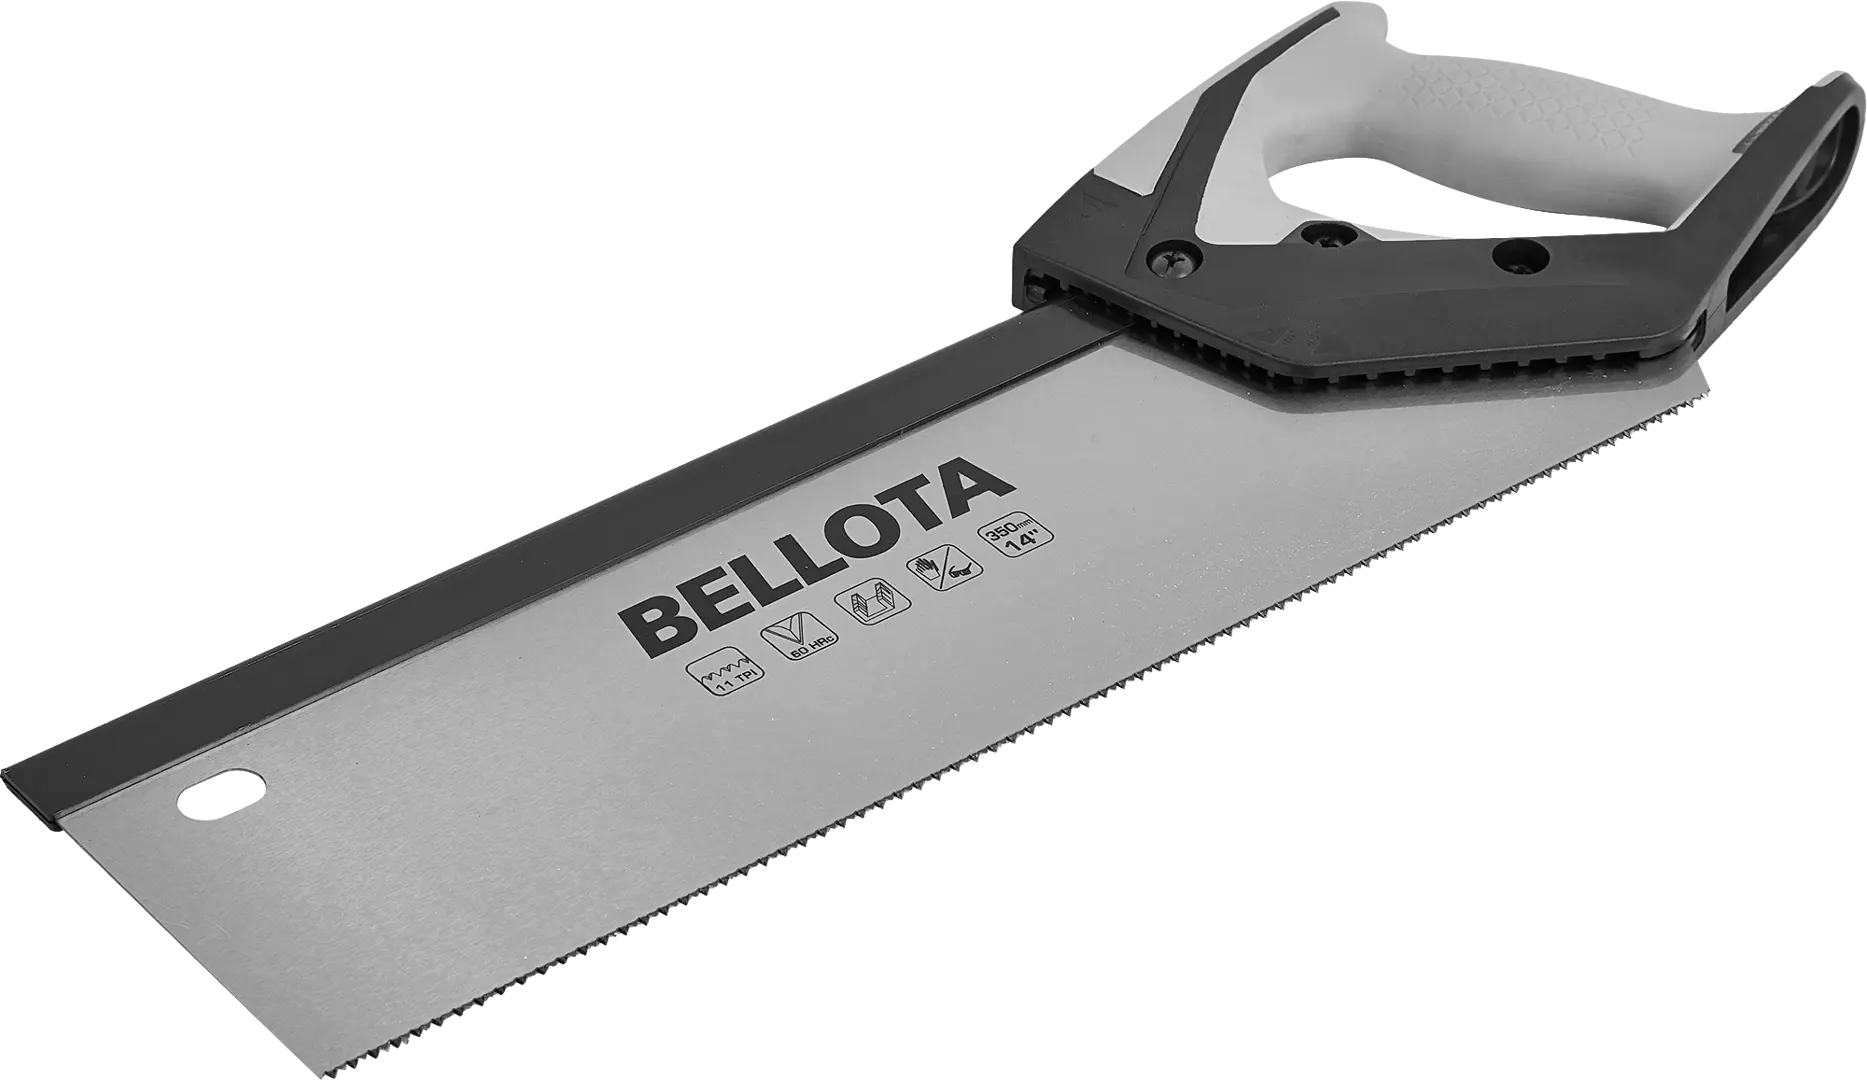 Пила обушковая по дереву Bellota 4565-14 350 мм пила обушковая по дереву bellota 4565 14 350 мм